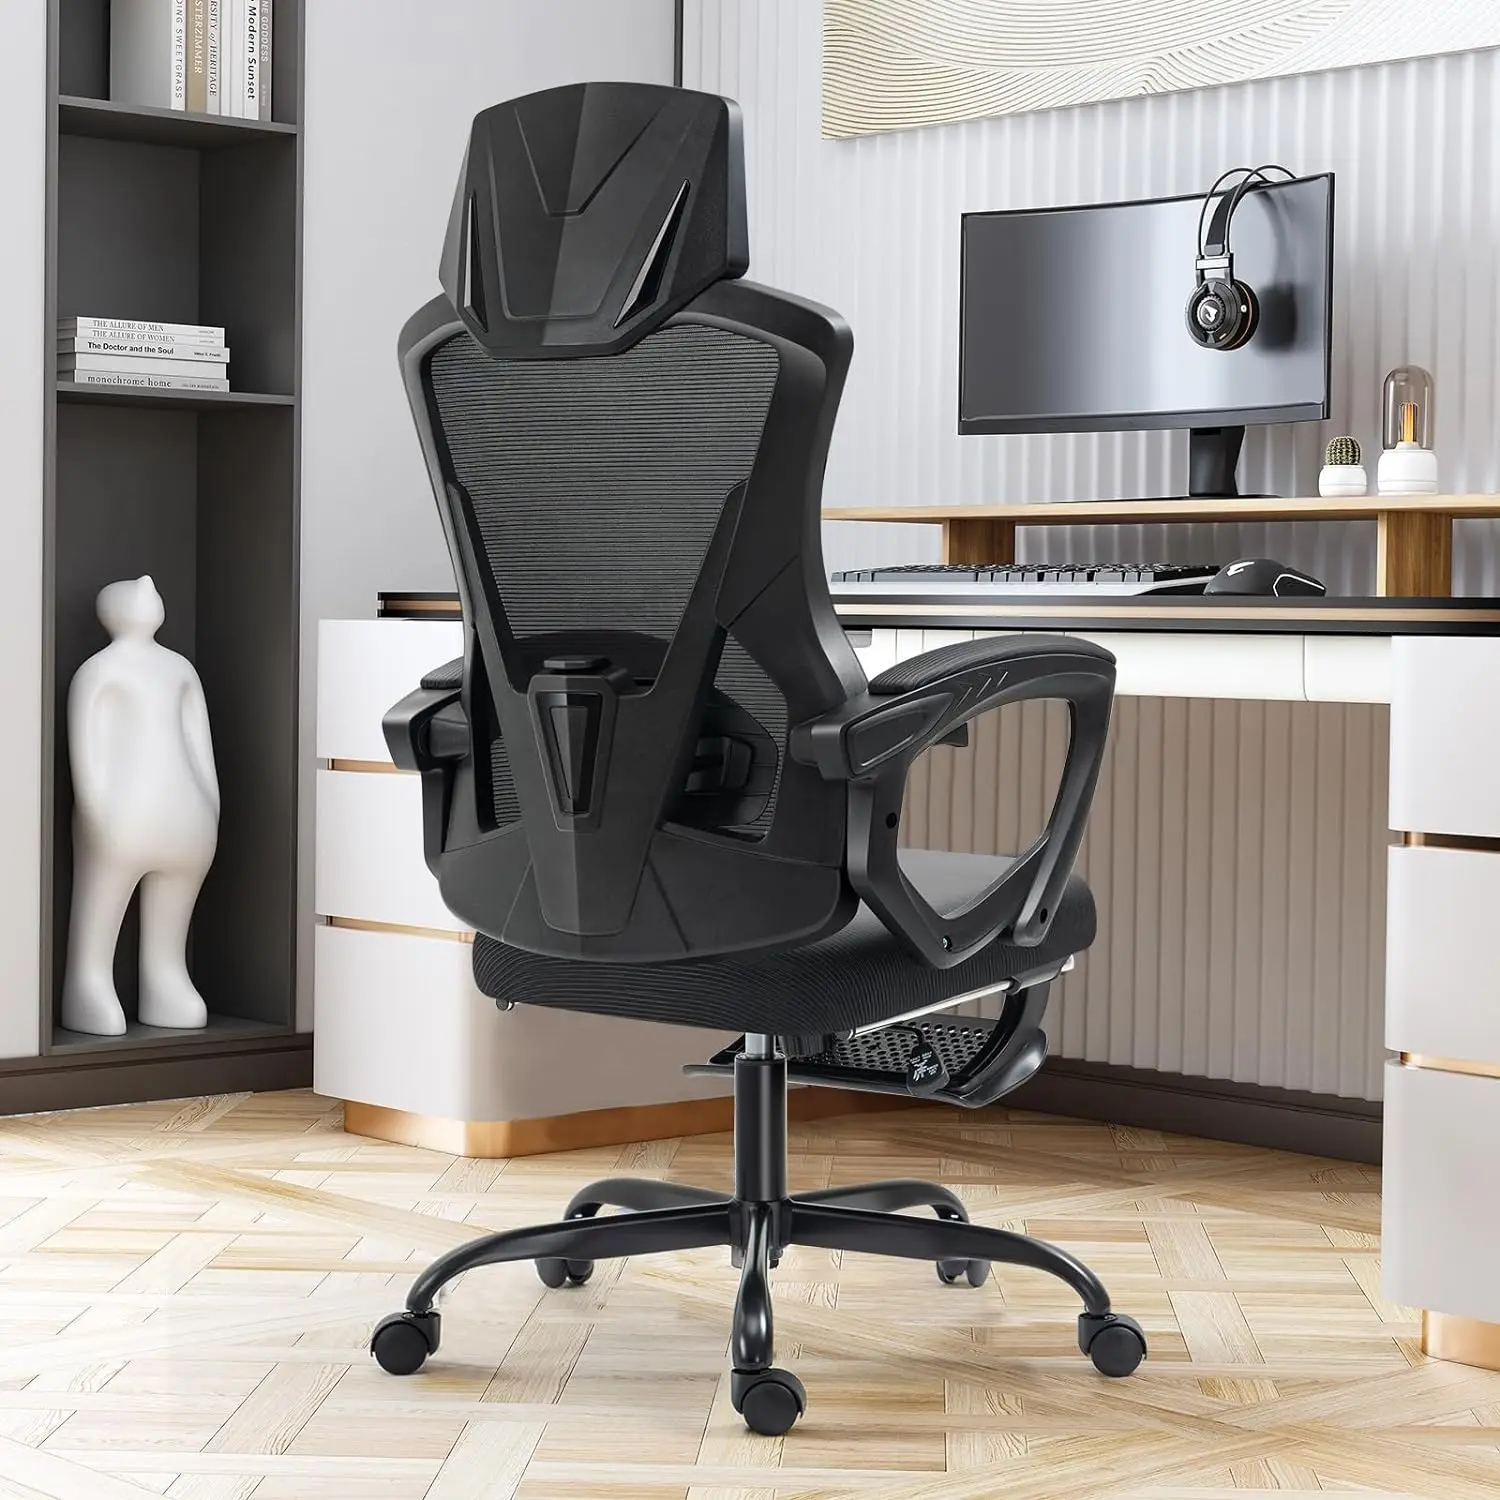 

Офисное кресло со средней спинкой, вращающееся кресло для поддержки поясницы, компьютерное игровое кресло с удобными подлокотниками, Сетчатое настольное кресло